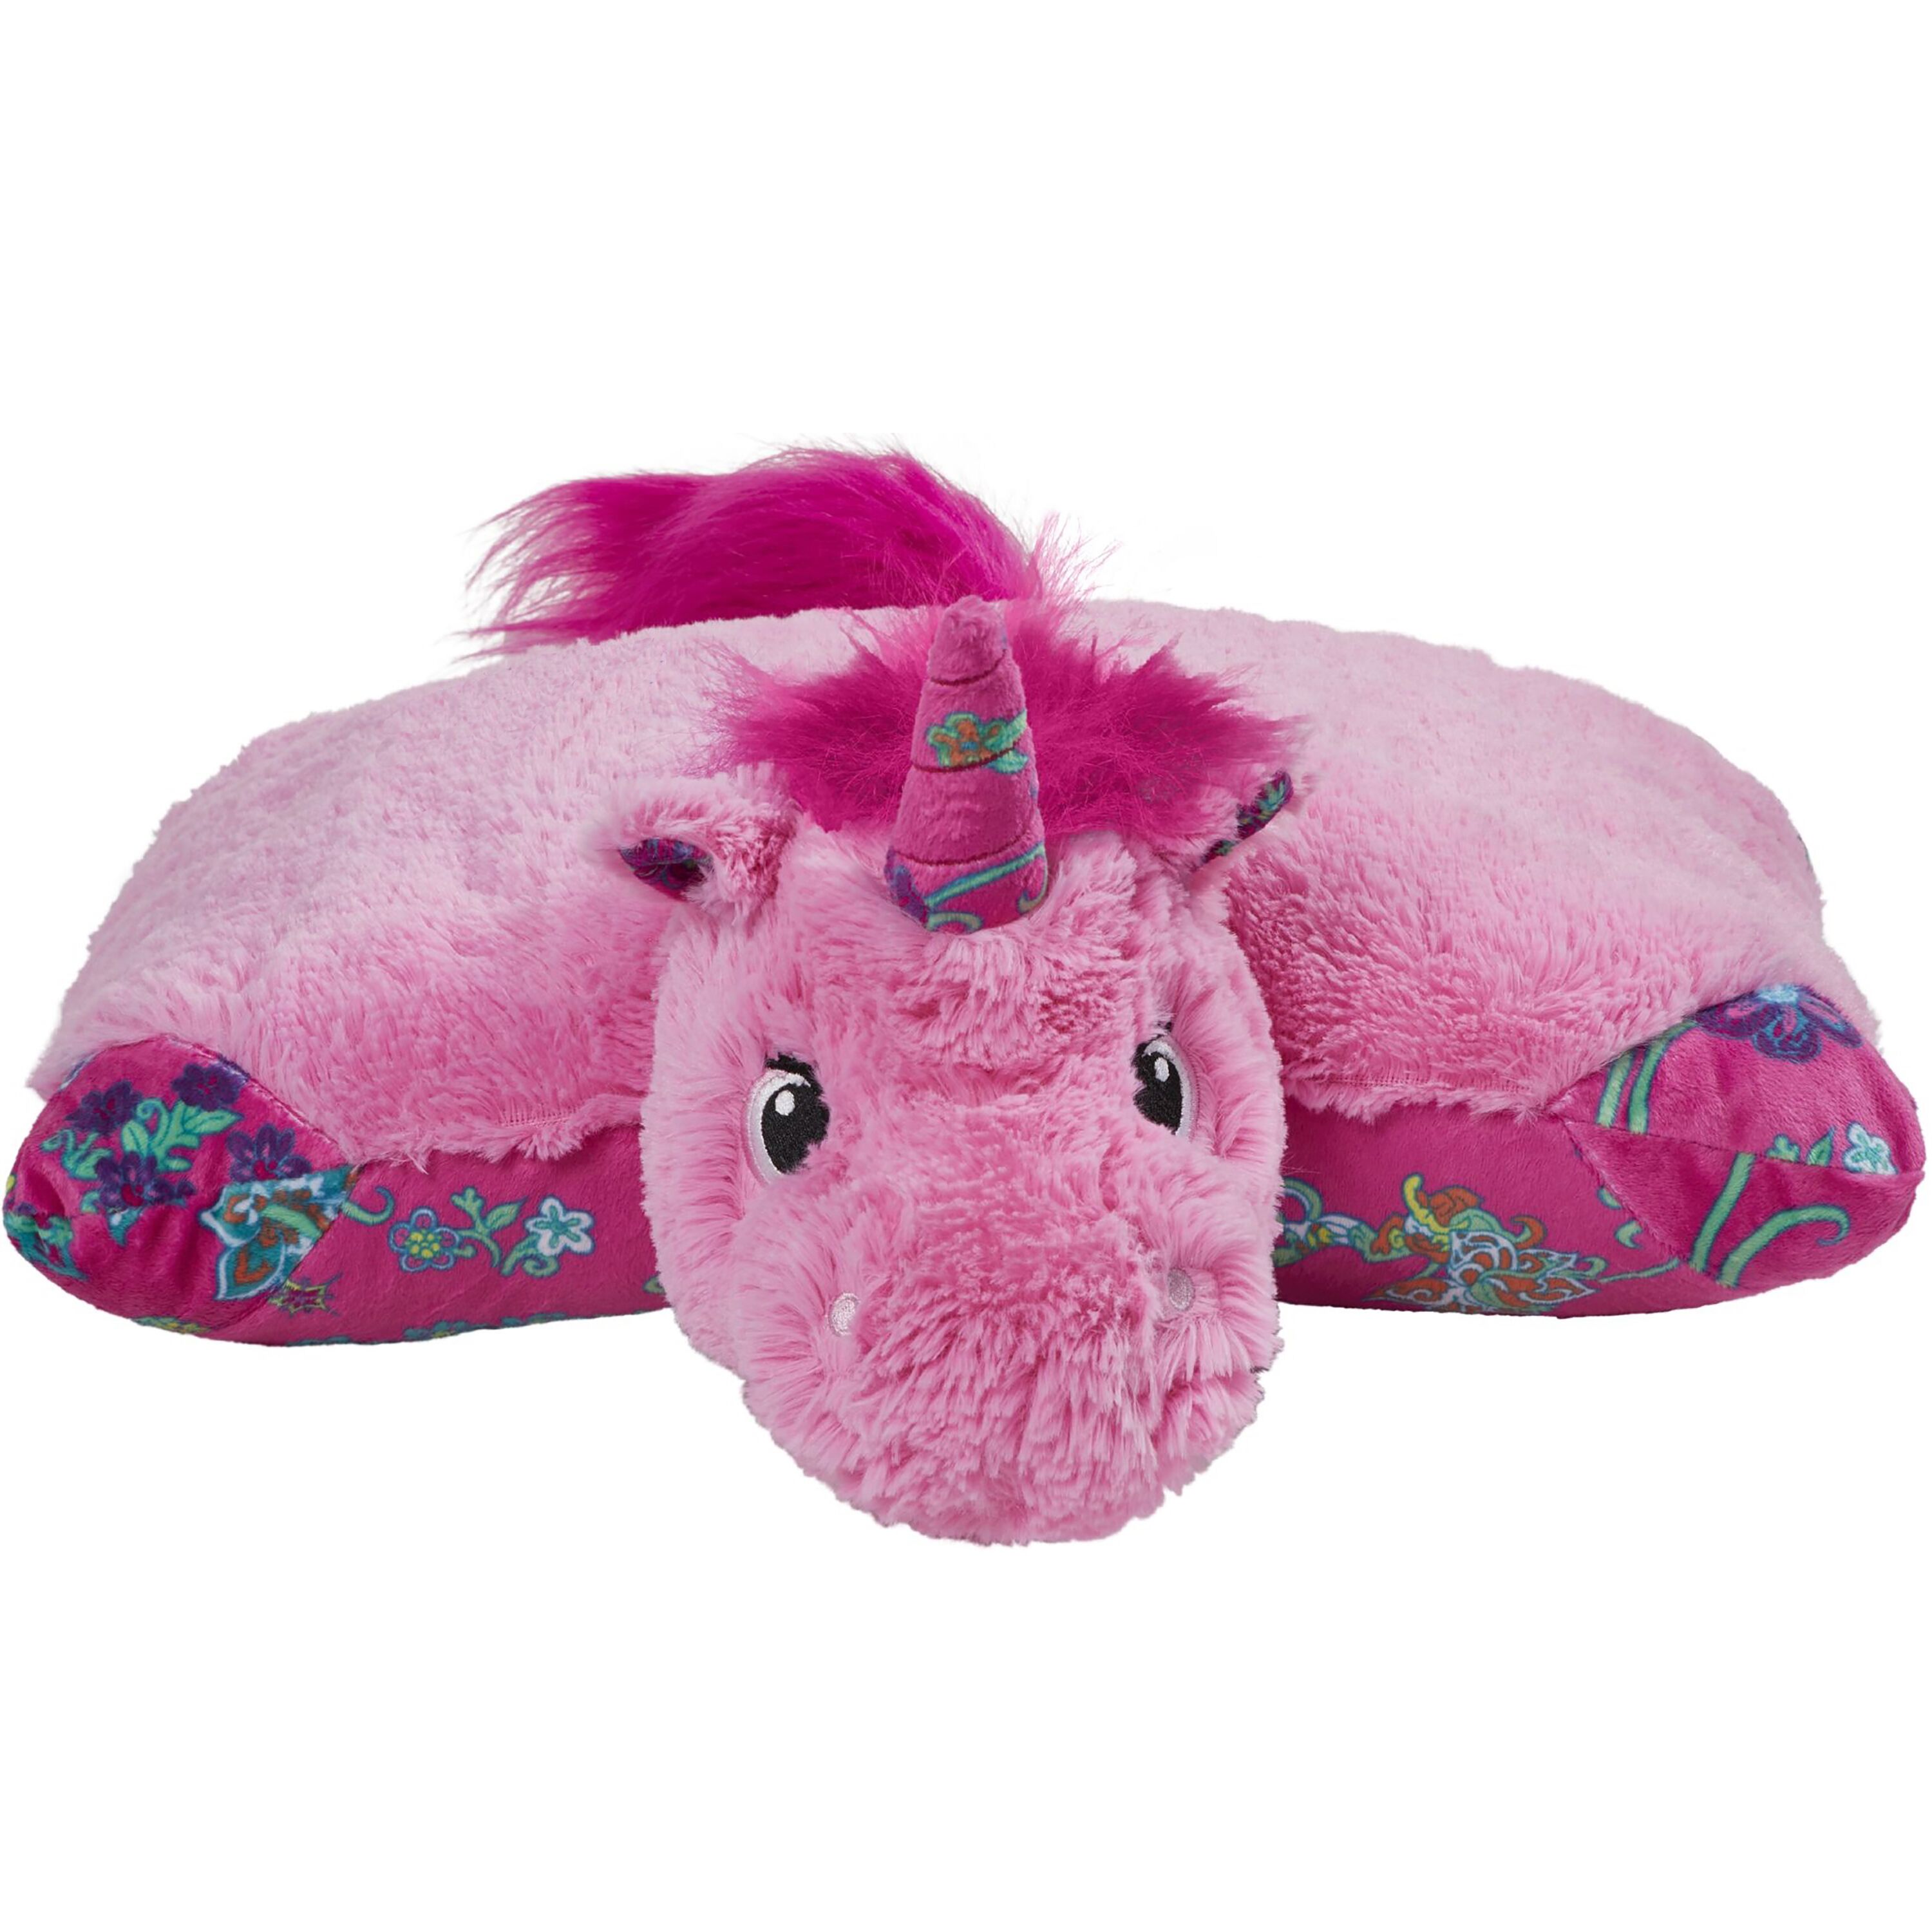 Pillow Pets 18" Pink Unicorn Stuffed Animal Plush Toy Pillow Pet - image 2 of 6